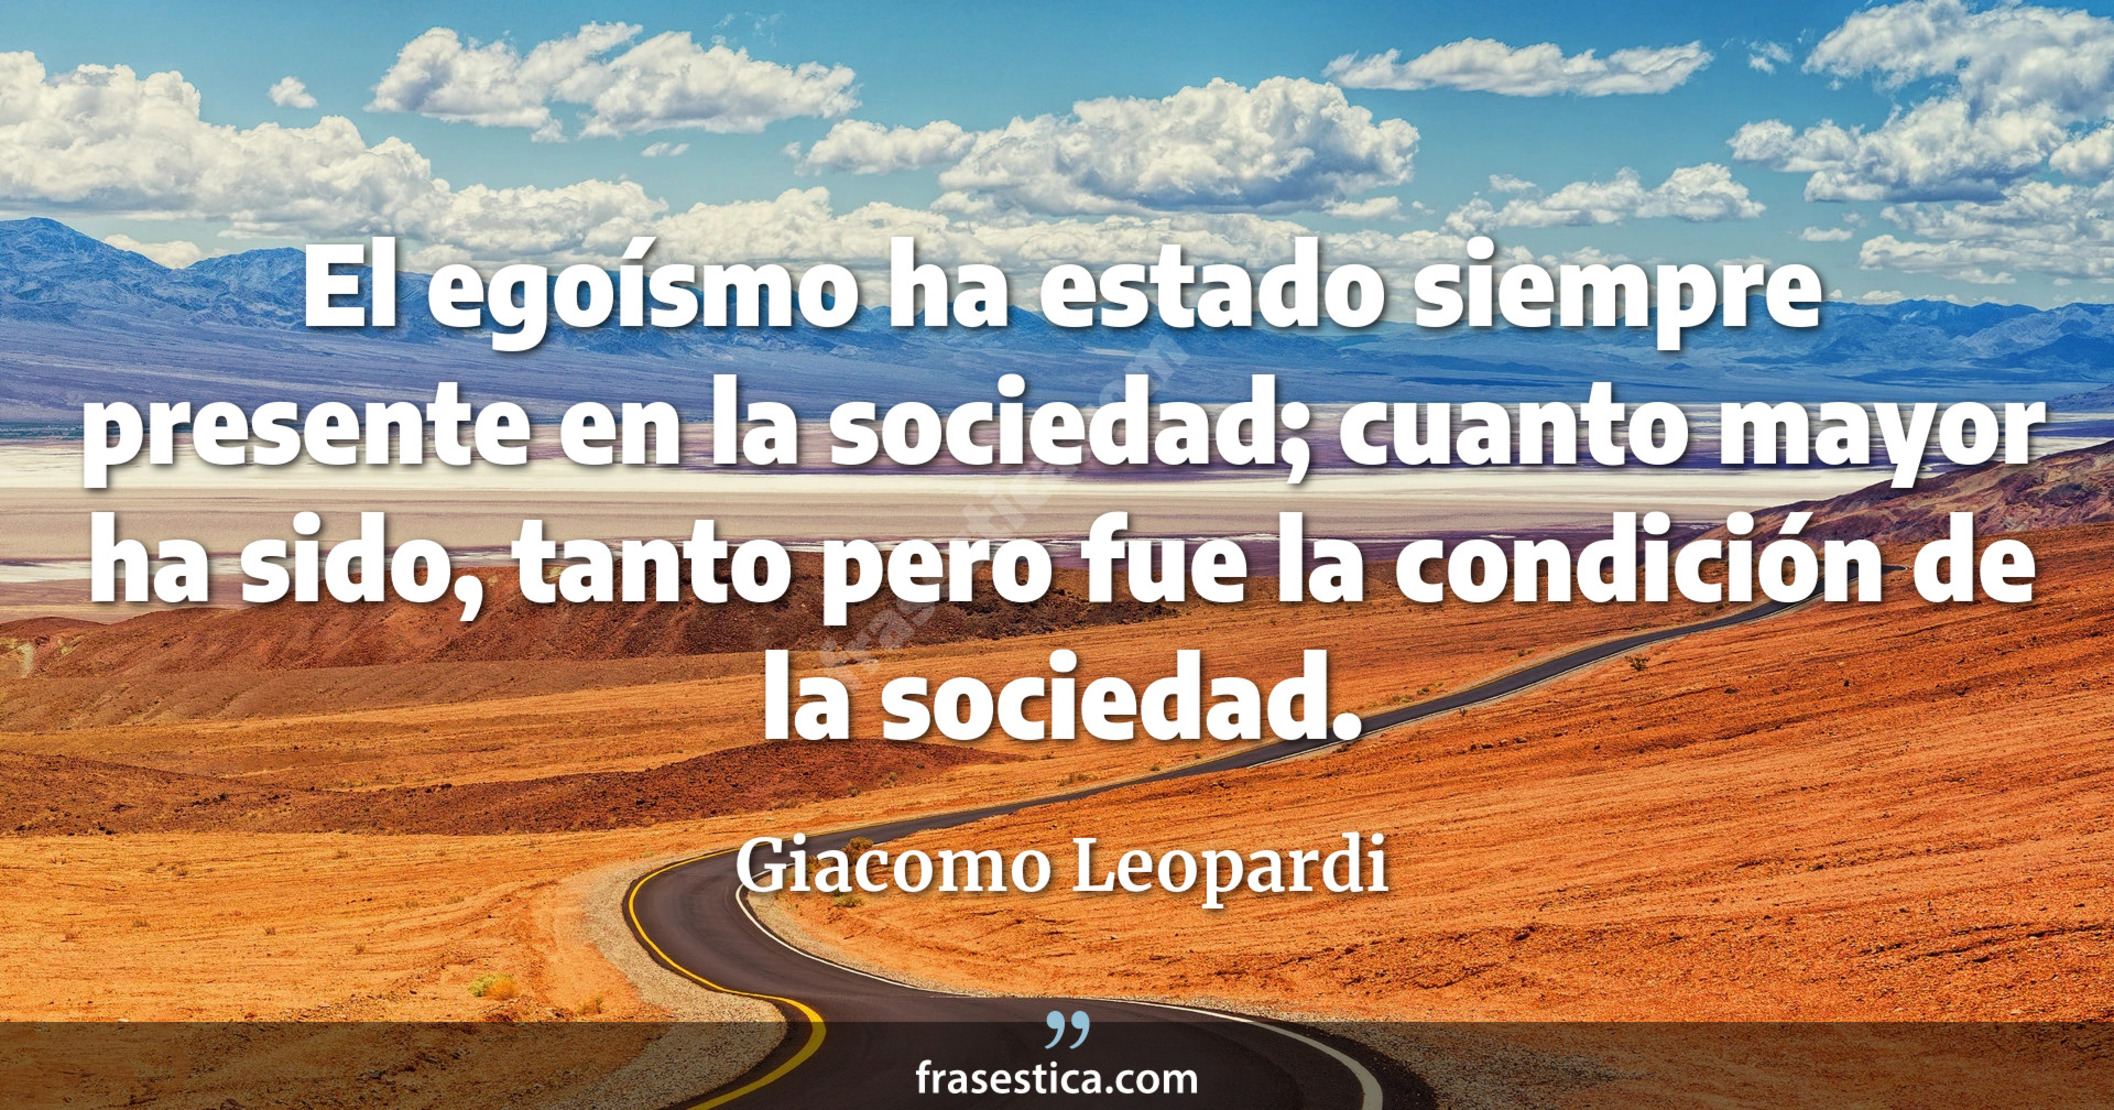 El egoísmo ha estado siempre presente en la sociedad; cuanto mayor ha sido, tanto pero fue la condición de la sociedad. - Giacomo Leopardi